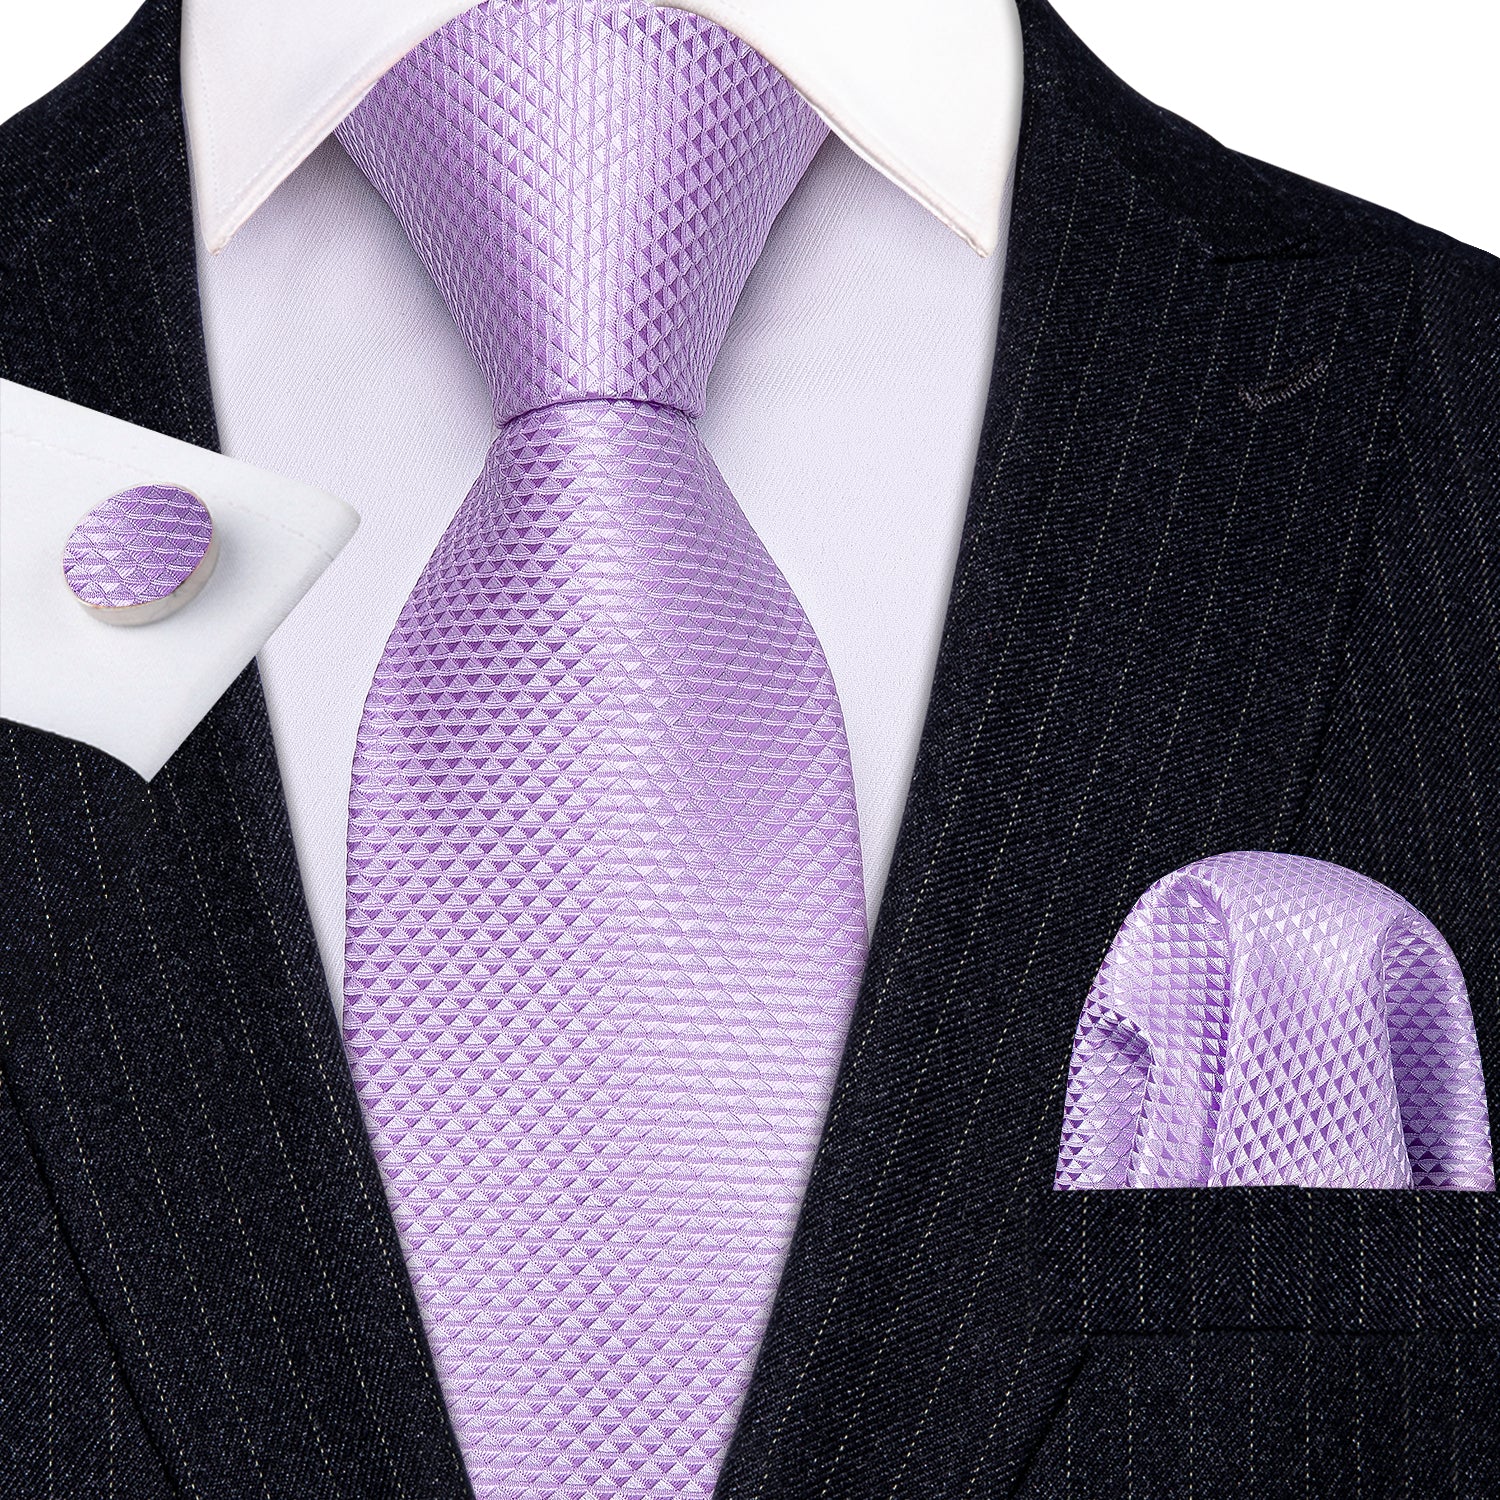 Barry.wang Men's Tie Light Purple Geometric Tie Hanky Cufflinks Set